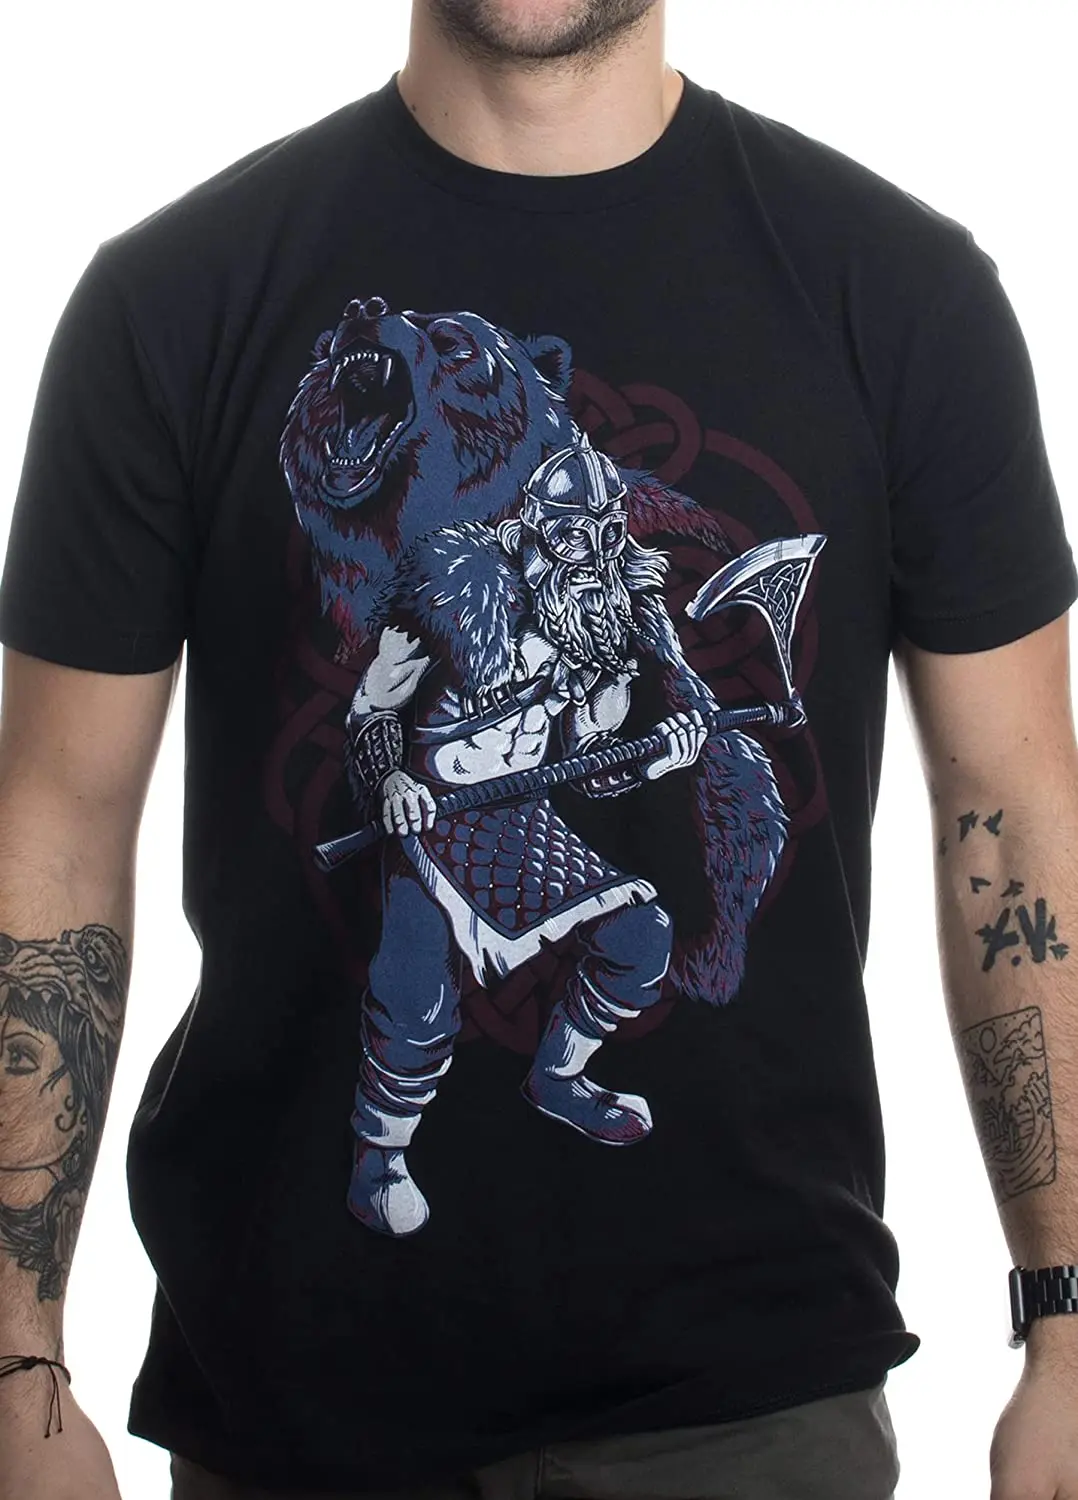 

Мужские повседневные футболки Vi king Berserker, медведь дух вальгалла, Скандинавская мифология, скандинавский воин, 100% хлопок, Свободный Топ, размер S-3XL